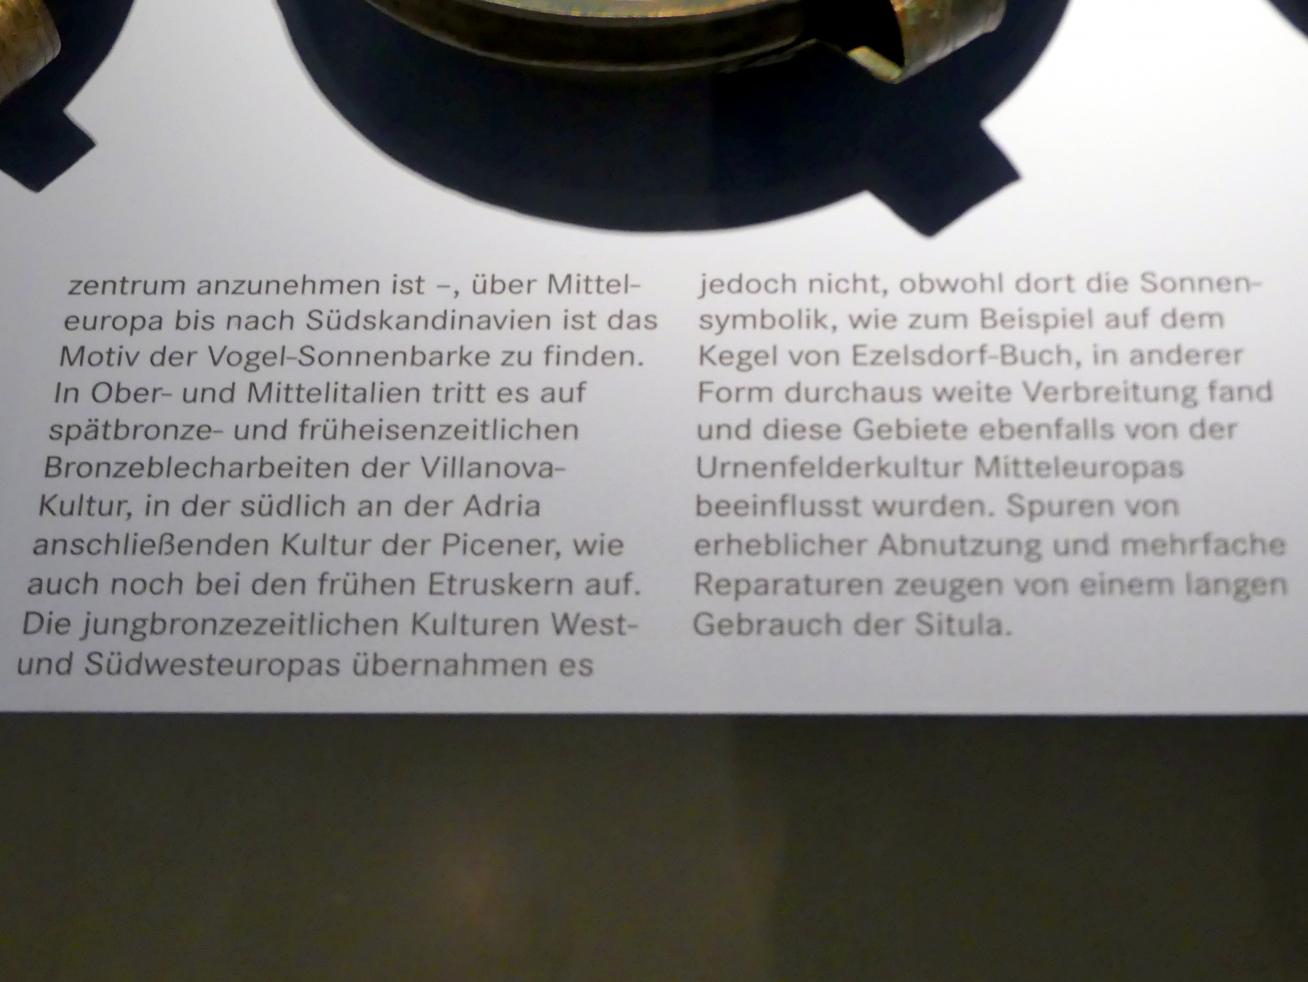 Situla vom Typ Kurd, Hallstattzeit B1, Urnenfelderzeit, 1400 - 700 v. Chr., 1050 - 950 v. Chr., Bild 4/5